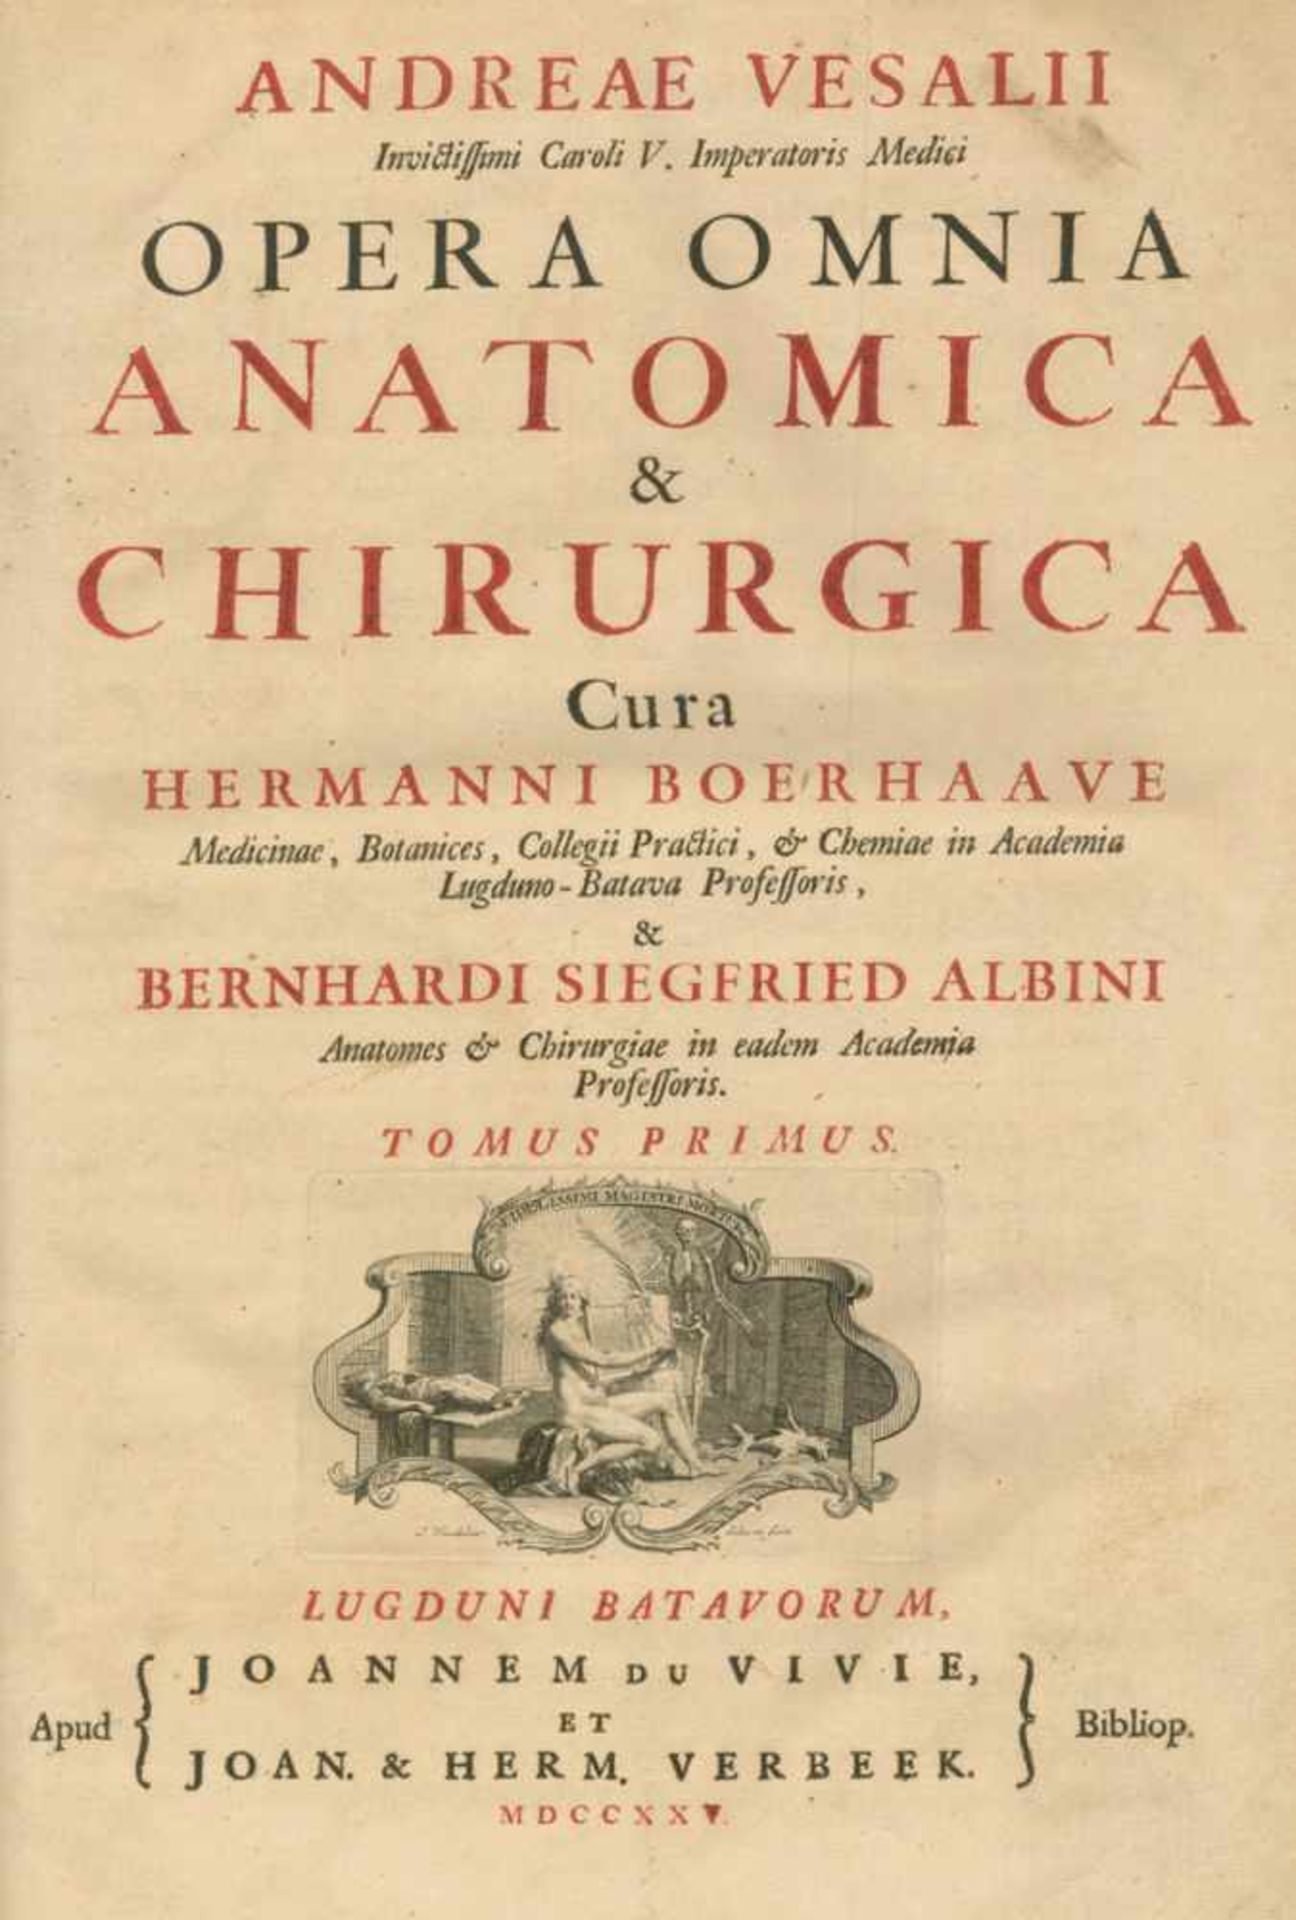 Vesalius,A.Opera omnia anatomica & chirurgica. Cura H. Boerhaave & B. S. Albini. 2 in 1 Bd.